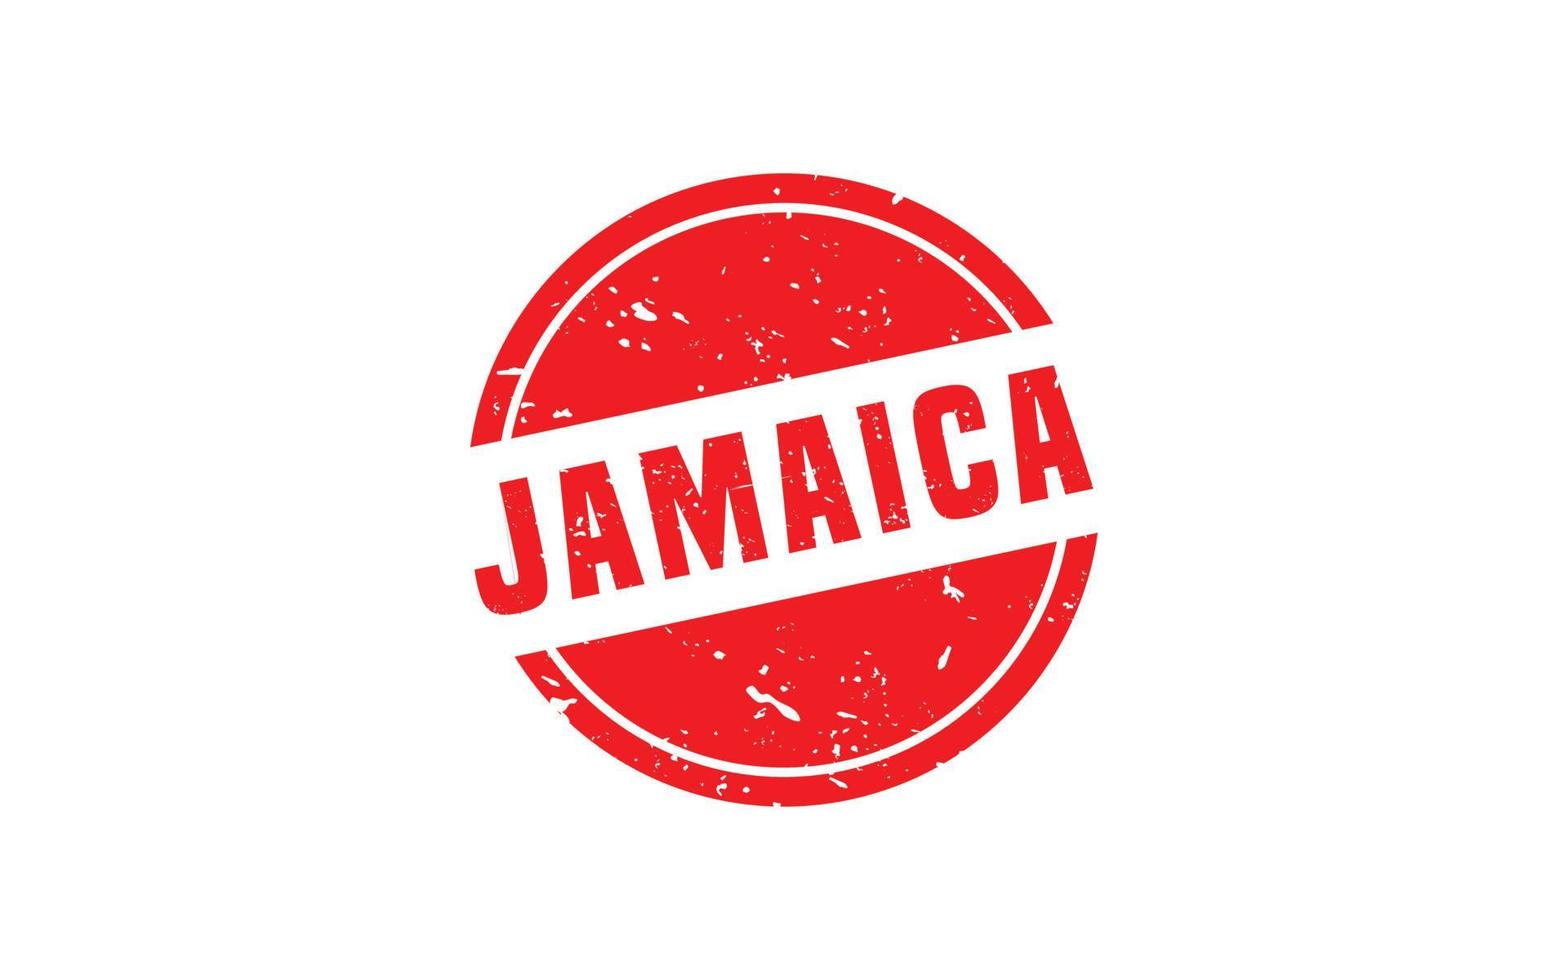 goma de sello jamaica con estilo grunge sobre fondo blanco vector